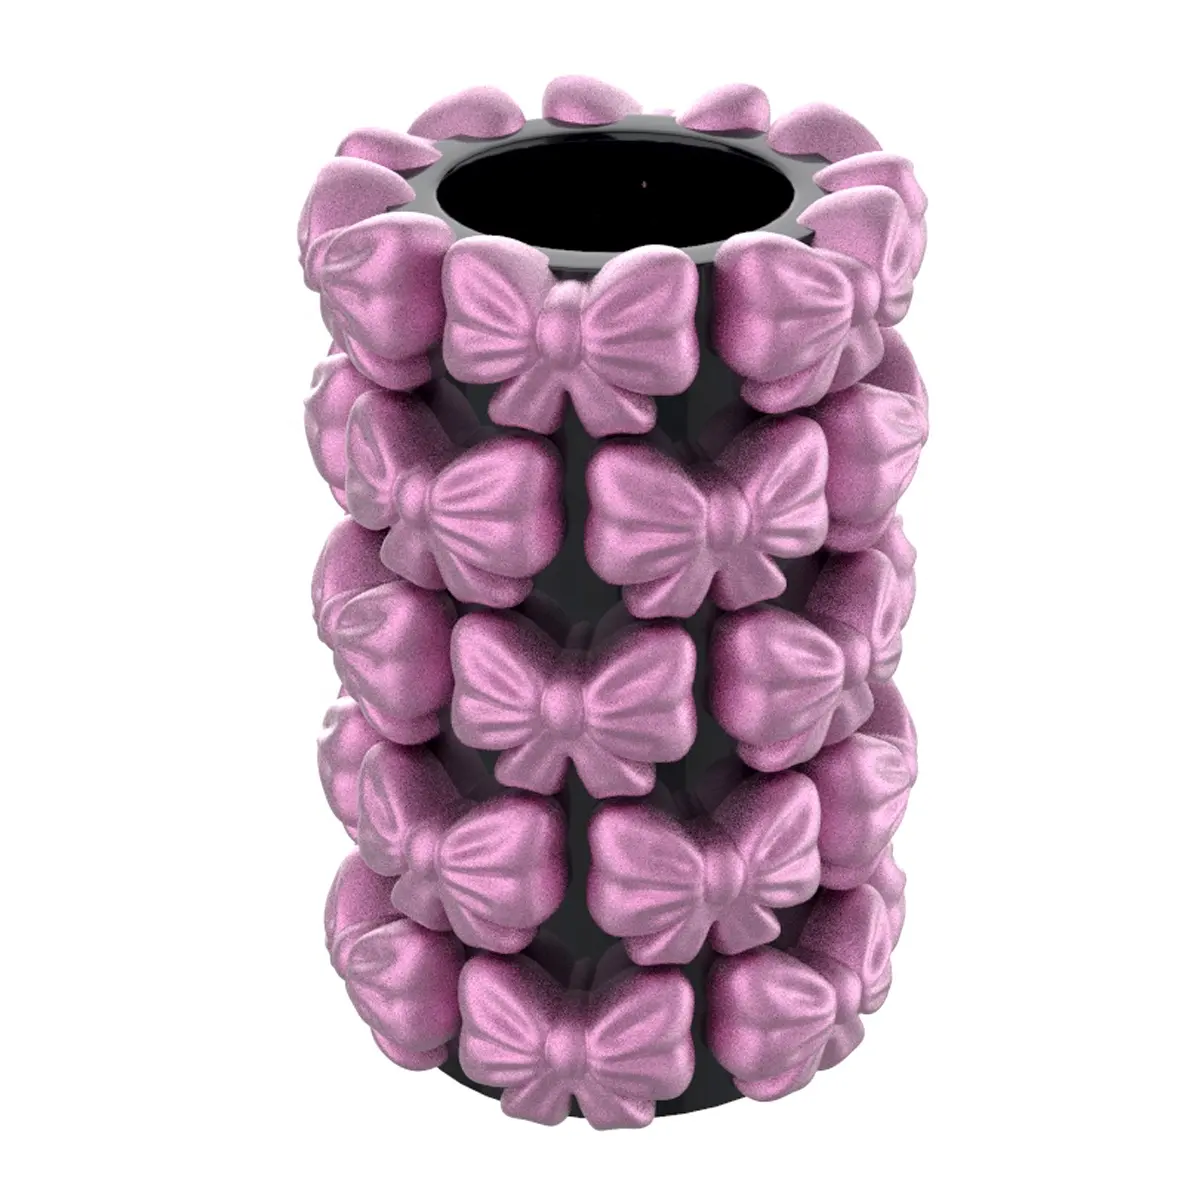 Forme personnalisée protégée par le droit d'auteur créatif esthétique arcs d'intérieur design décor à la maison noir et rose en céramique bowknot vase à fleurs